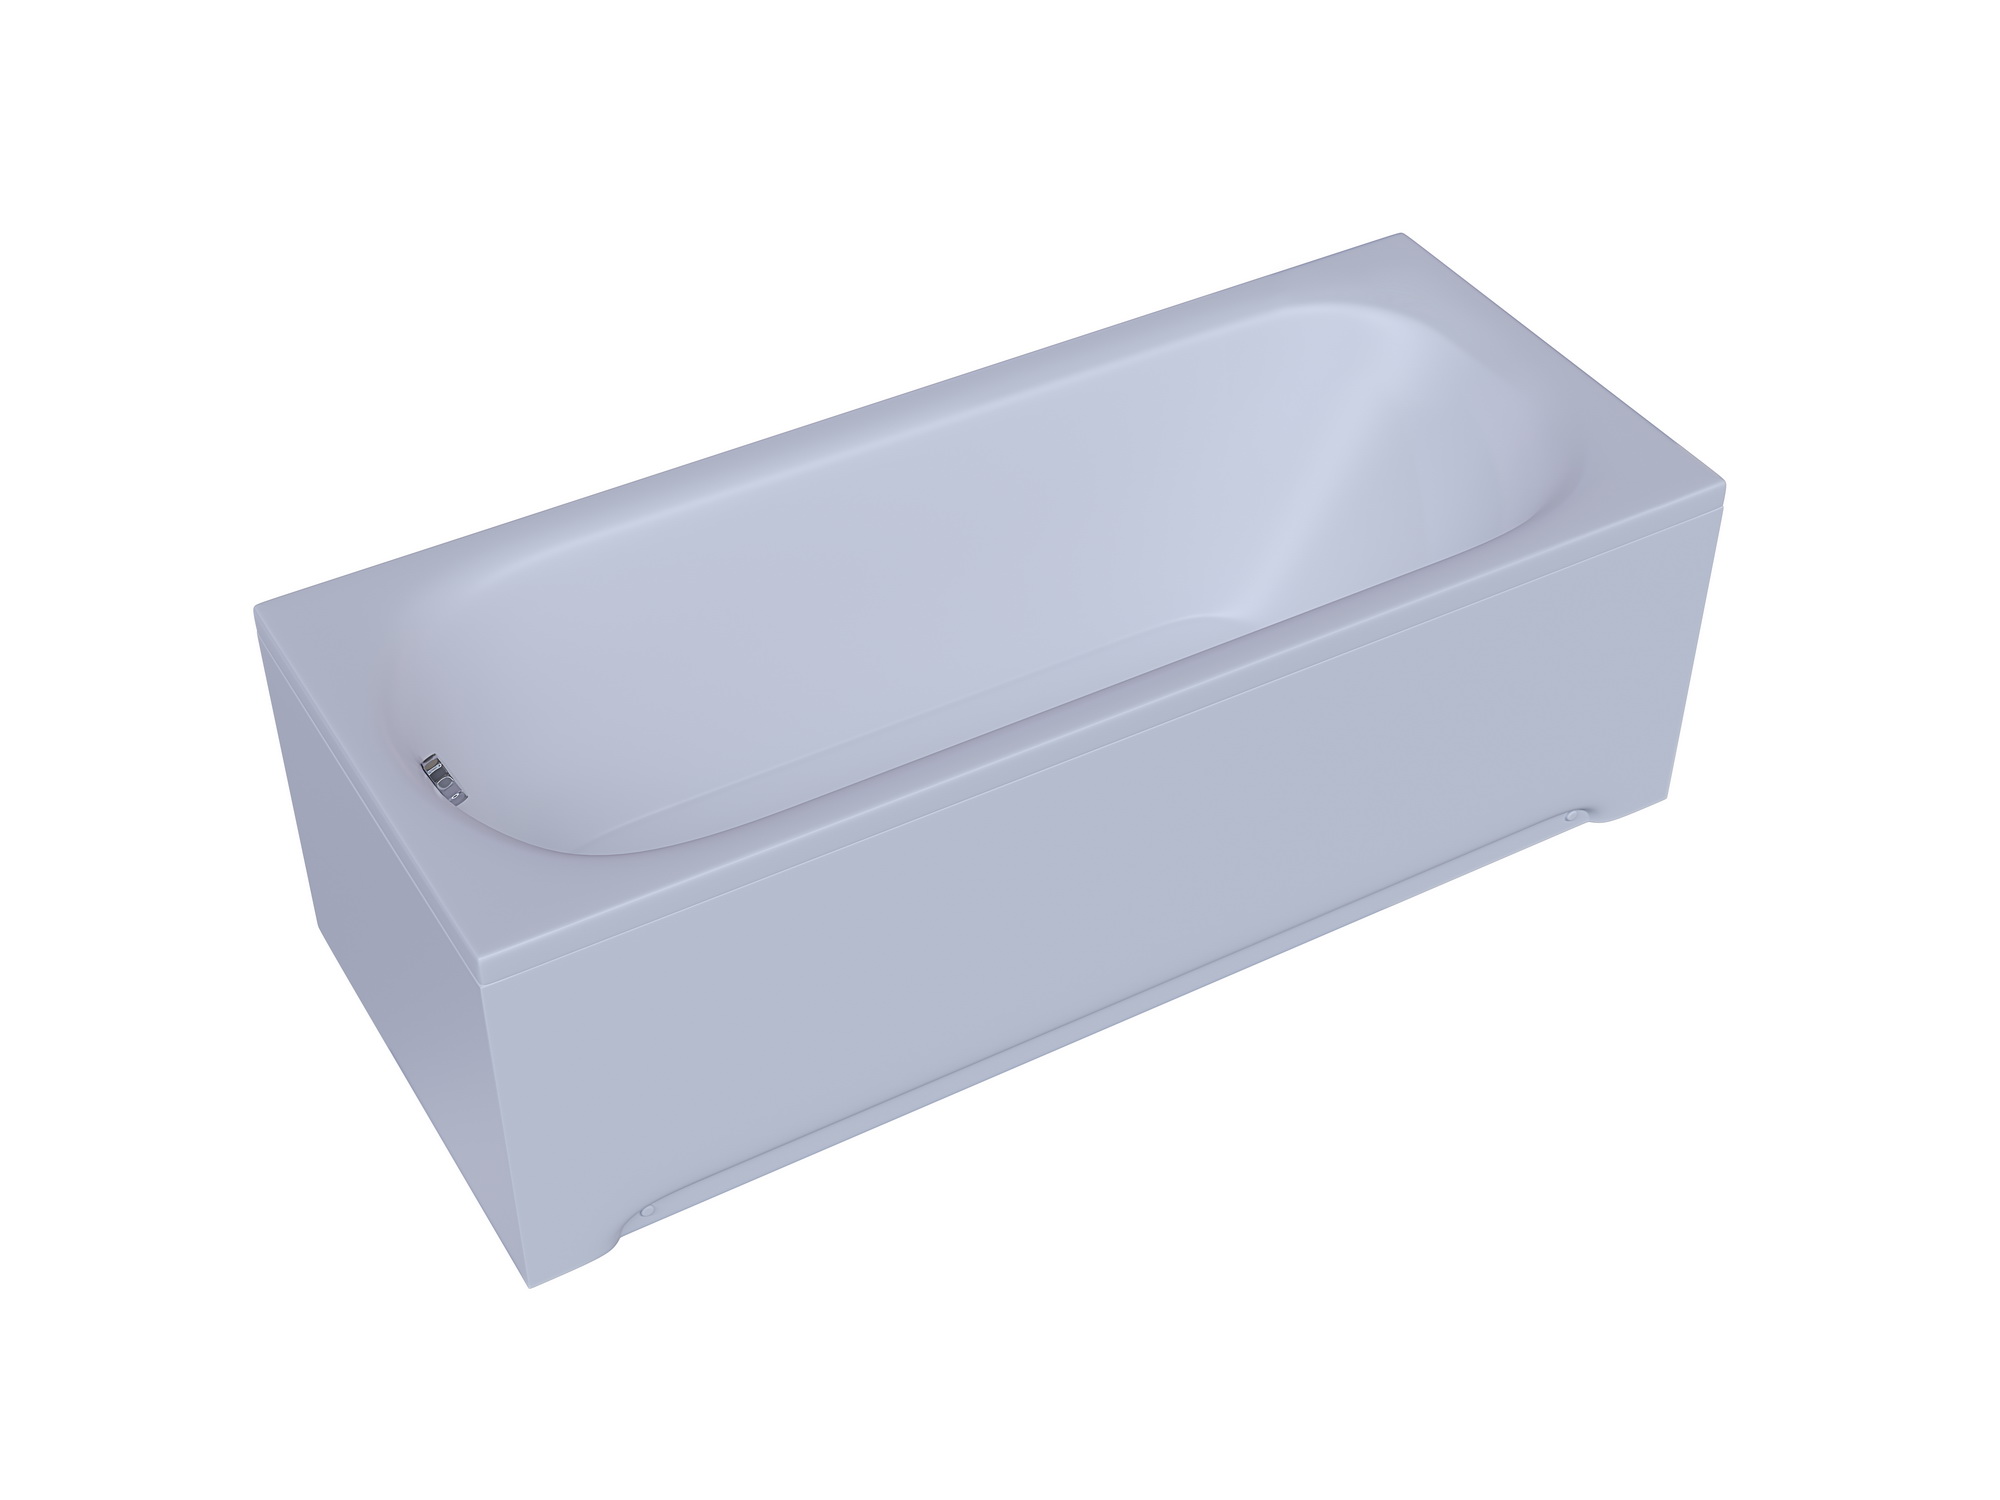 Акриловая ванна Aquatek Lifestyle Лугано 170x70 LUG170-0000001 без гидромассажа, белая, размер 170x70, цвет белый - фото 2